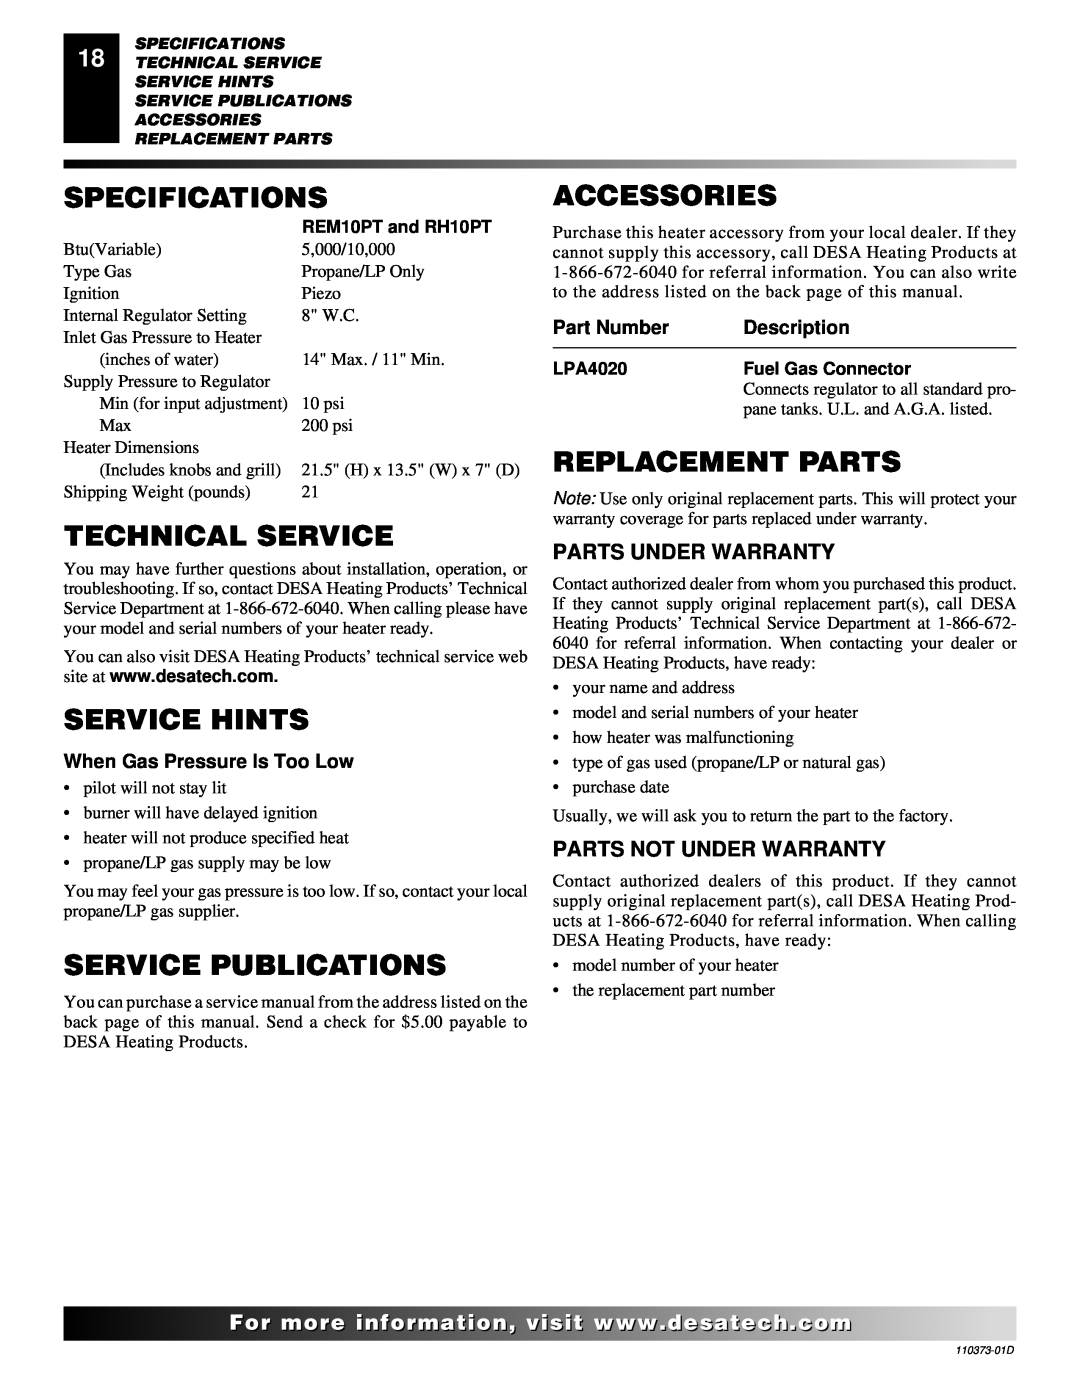 Desa REM10PT RH10PT Specifications, Technical Service, Service Hints, Service Publications, Accessories, Replacement Parts 